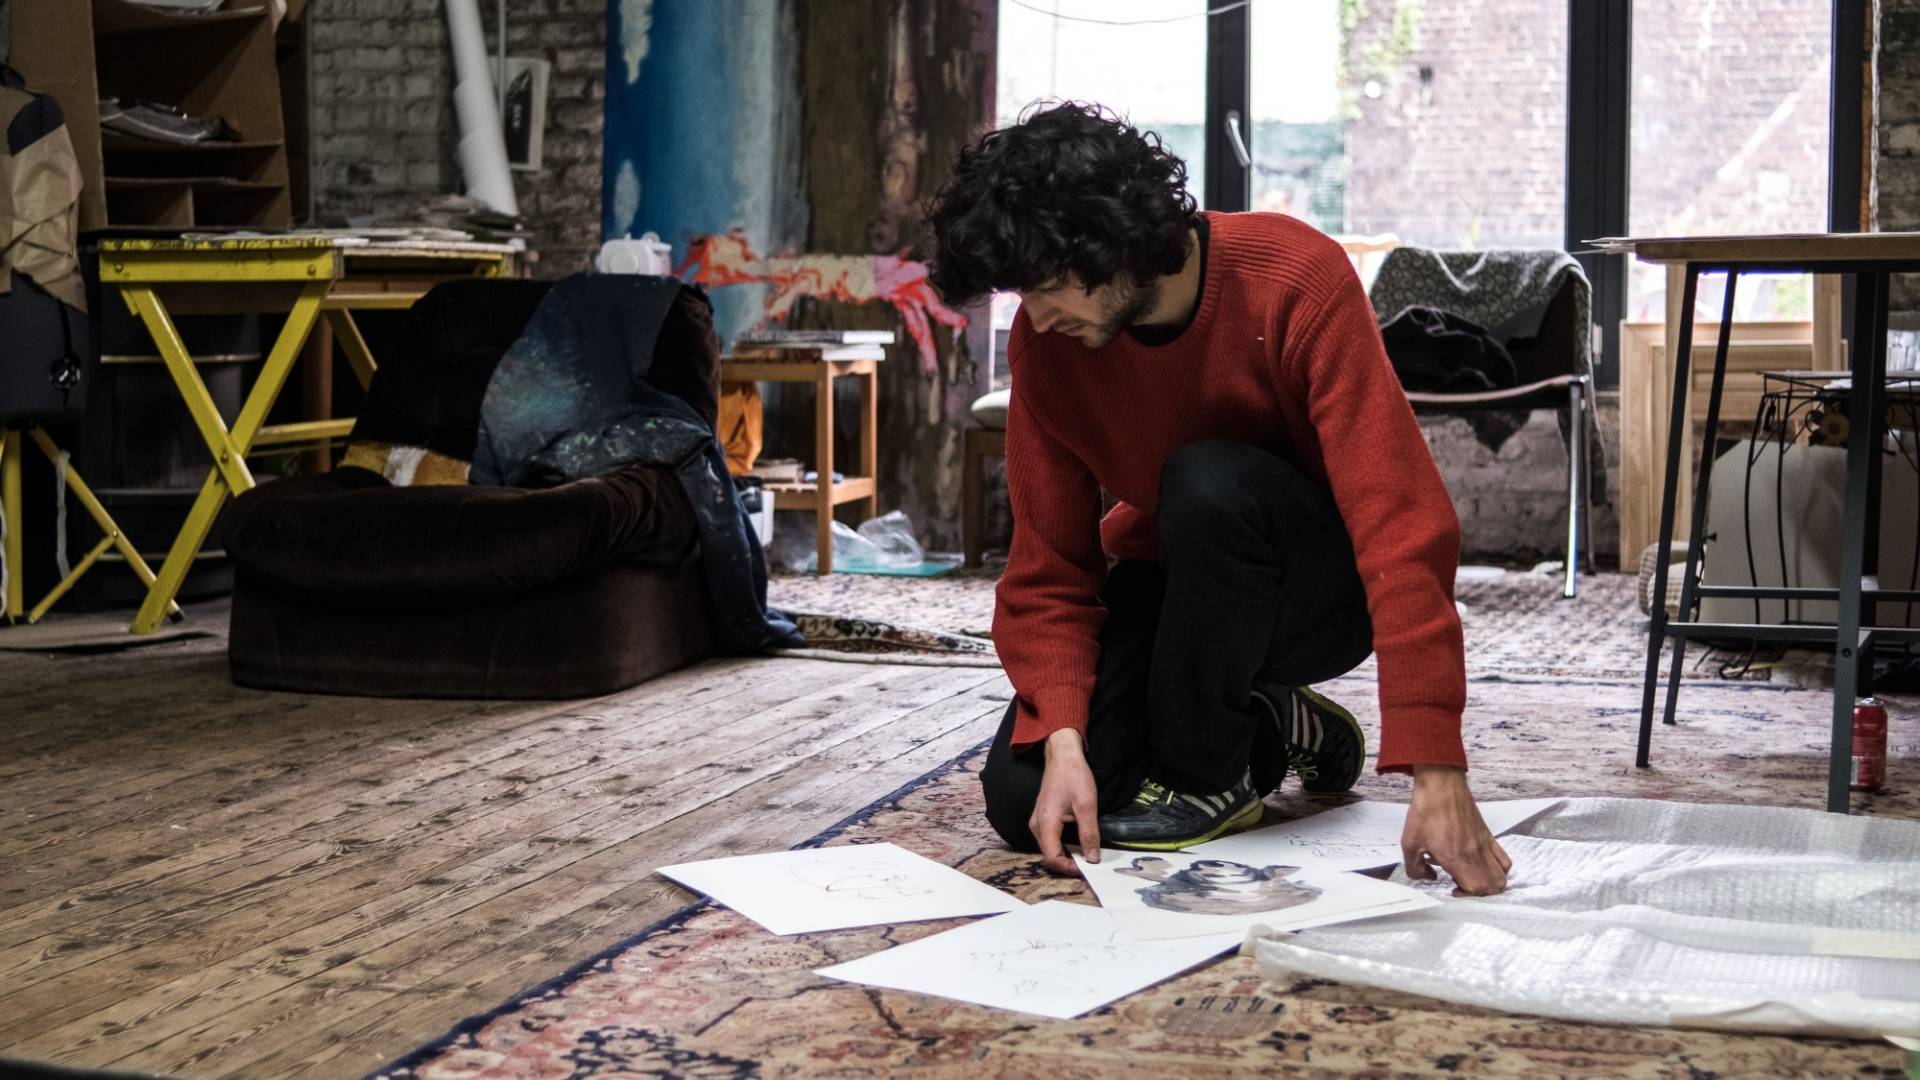 Andriu Deplazes, in ginocchio sul pavimento del suo atelier, classifica e osserva gli schizzi che ha disegnato a china su fogli bianchi.